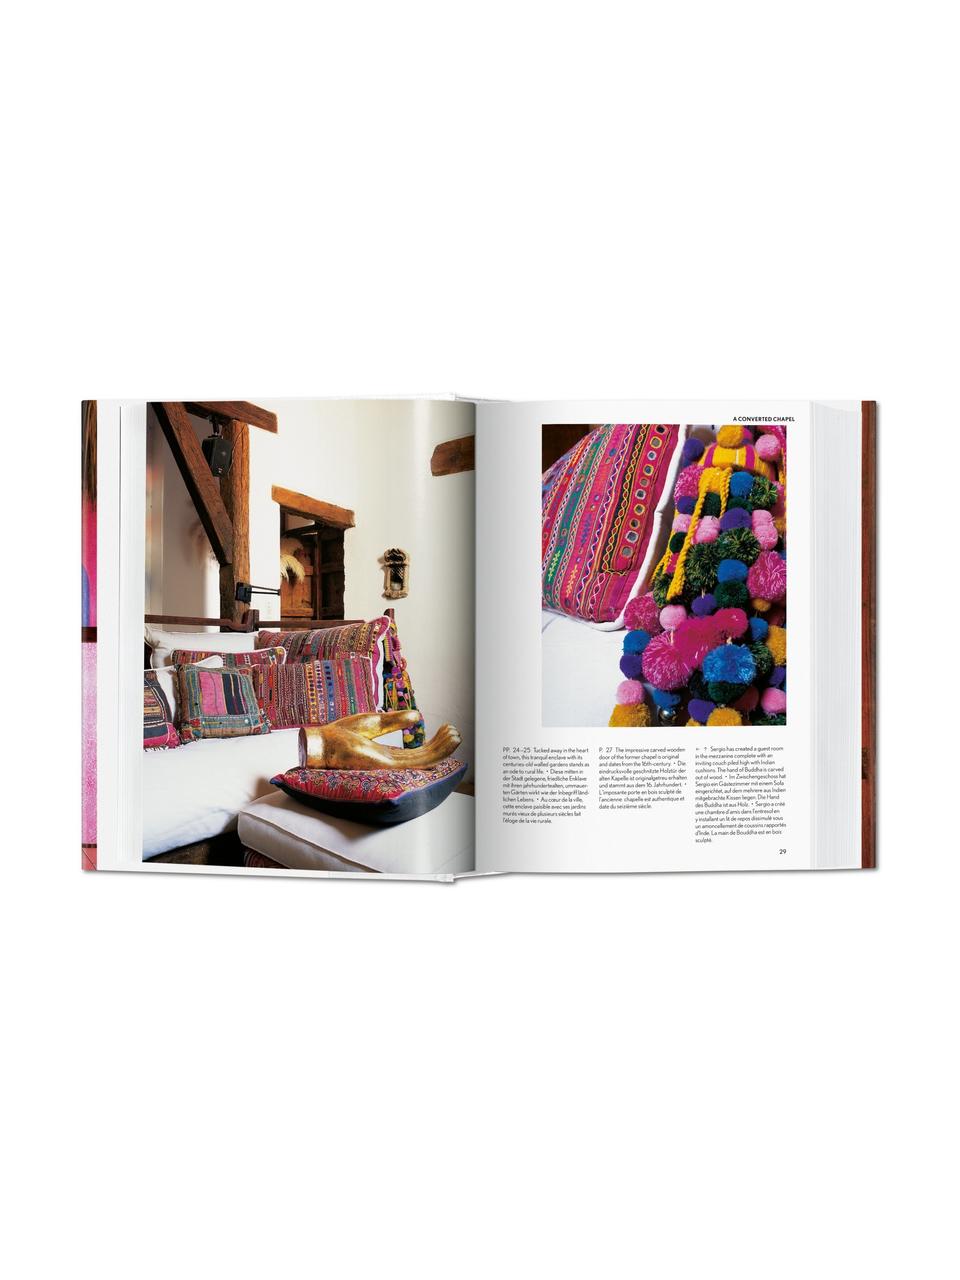 Libro illustrato Living in Mexico, Carta, copertina rigida, Rosa, multicolore, Larg. 14 x Lung. 20 cm